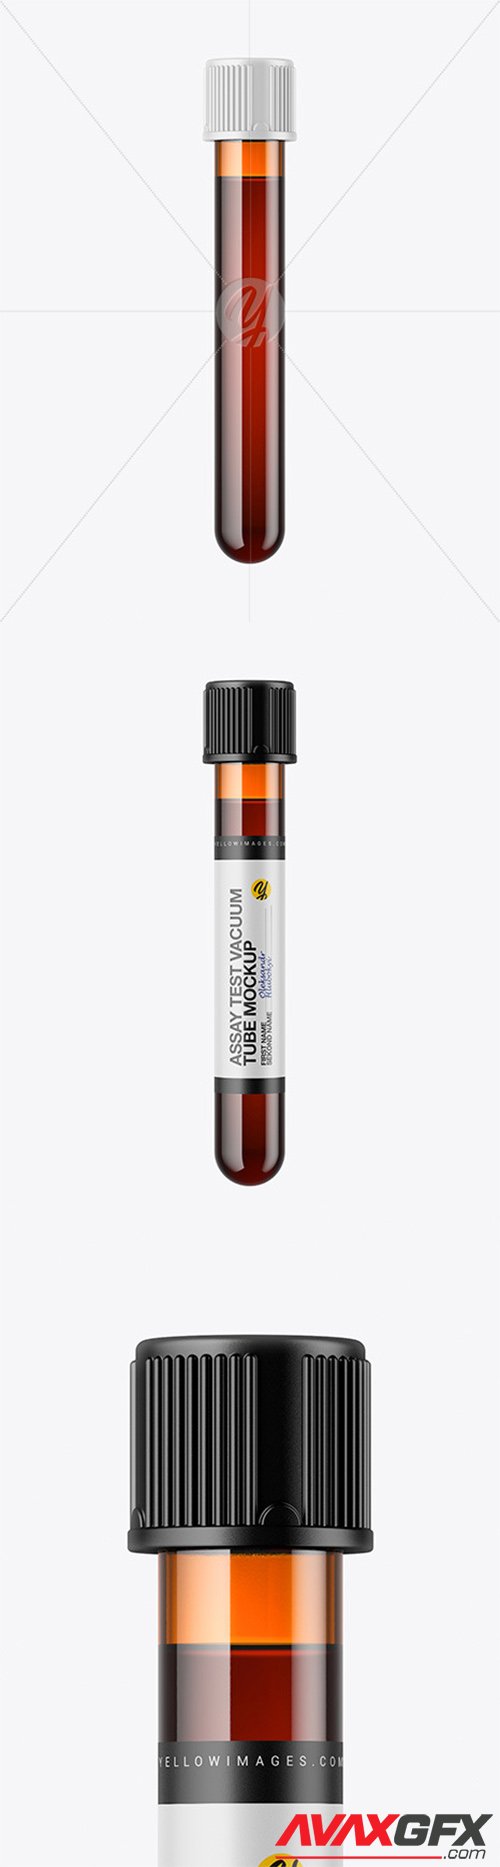 Amber Test Vacuum Tube Mockup 58278